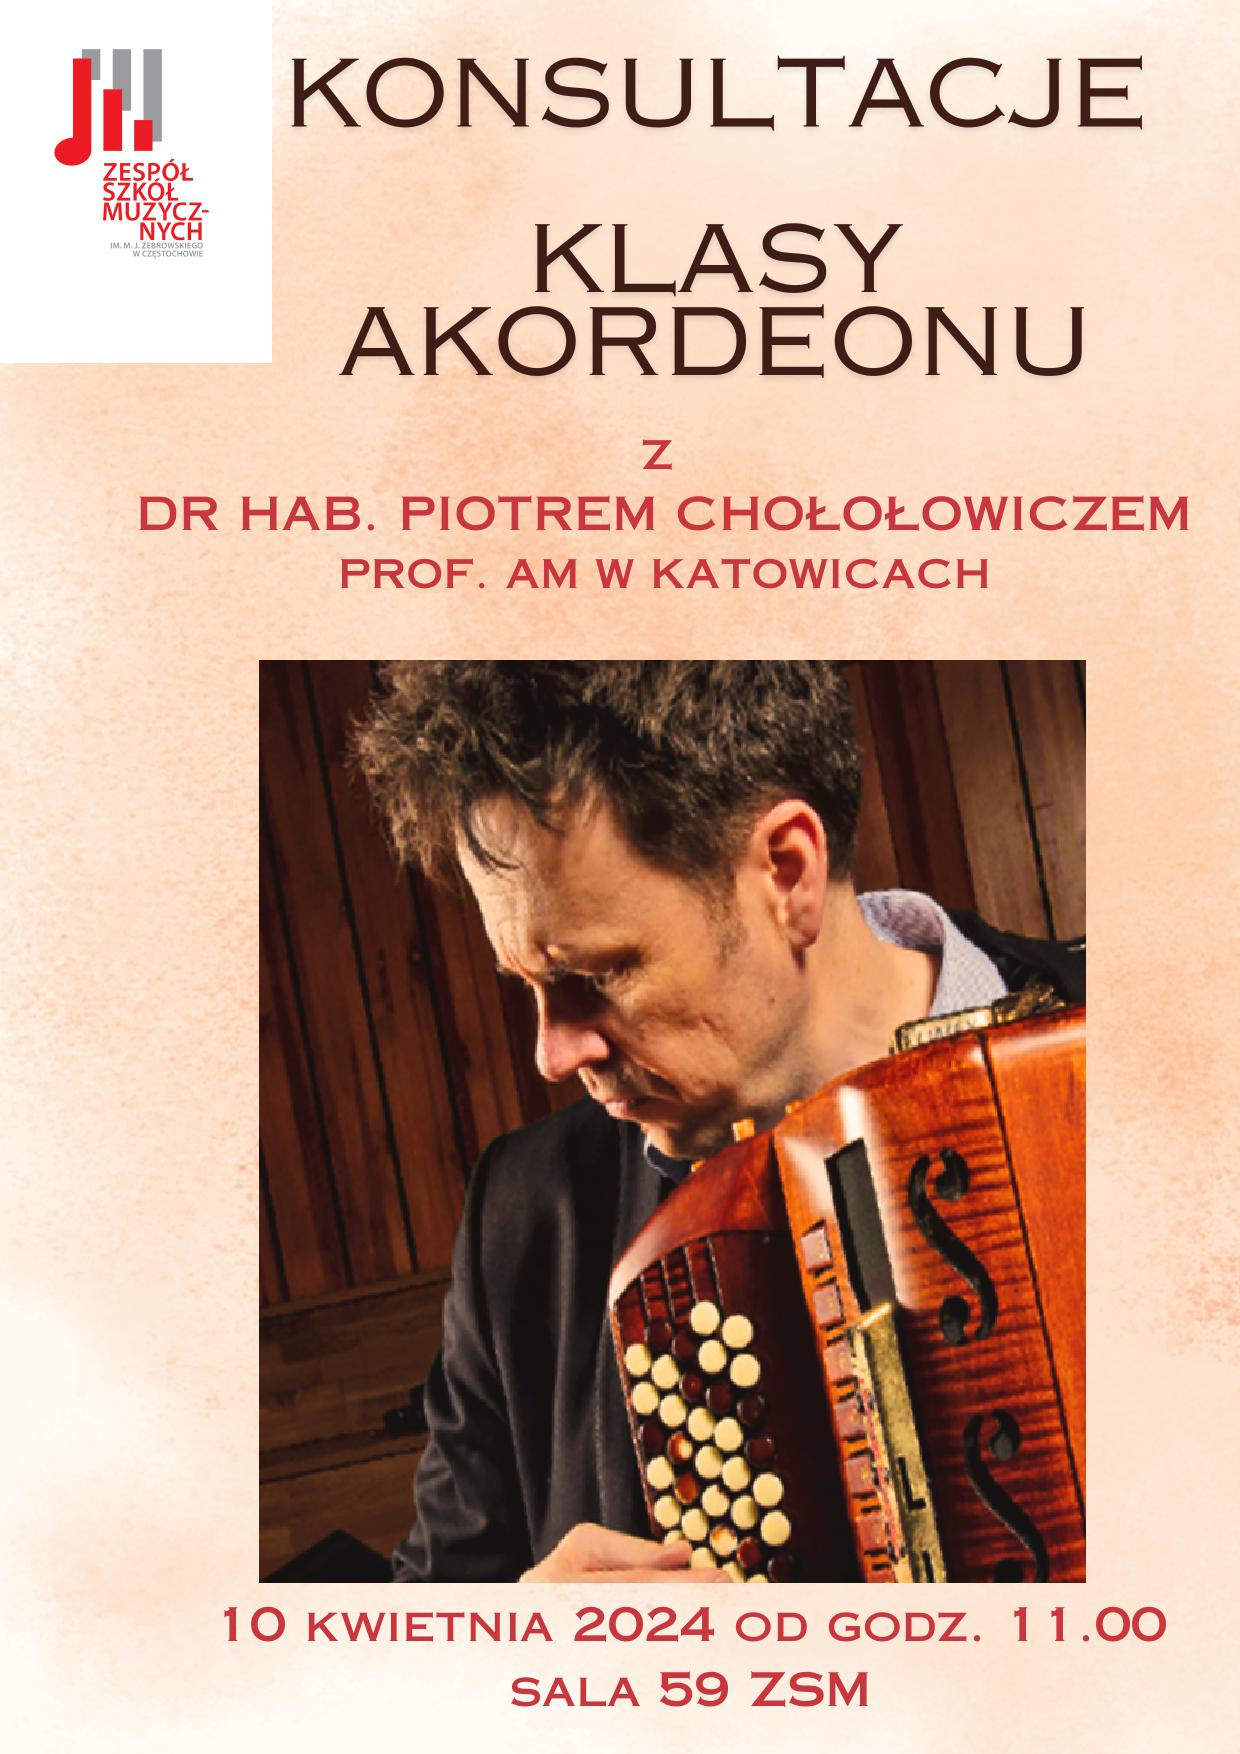 Beżowe tło, zdjęcie dra hab. Piotra Chołołowicza, informacje dotyczące warsztatów akordeonowych 10 kwietnia 2024 r.